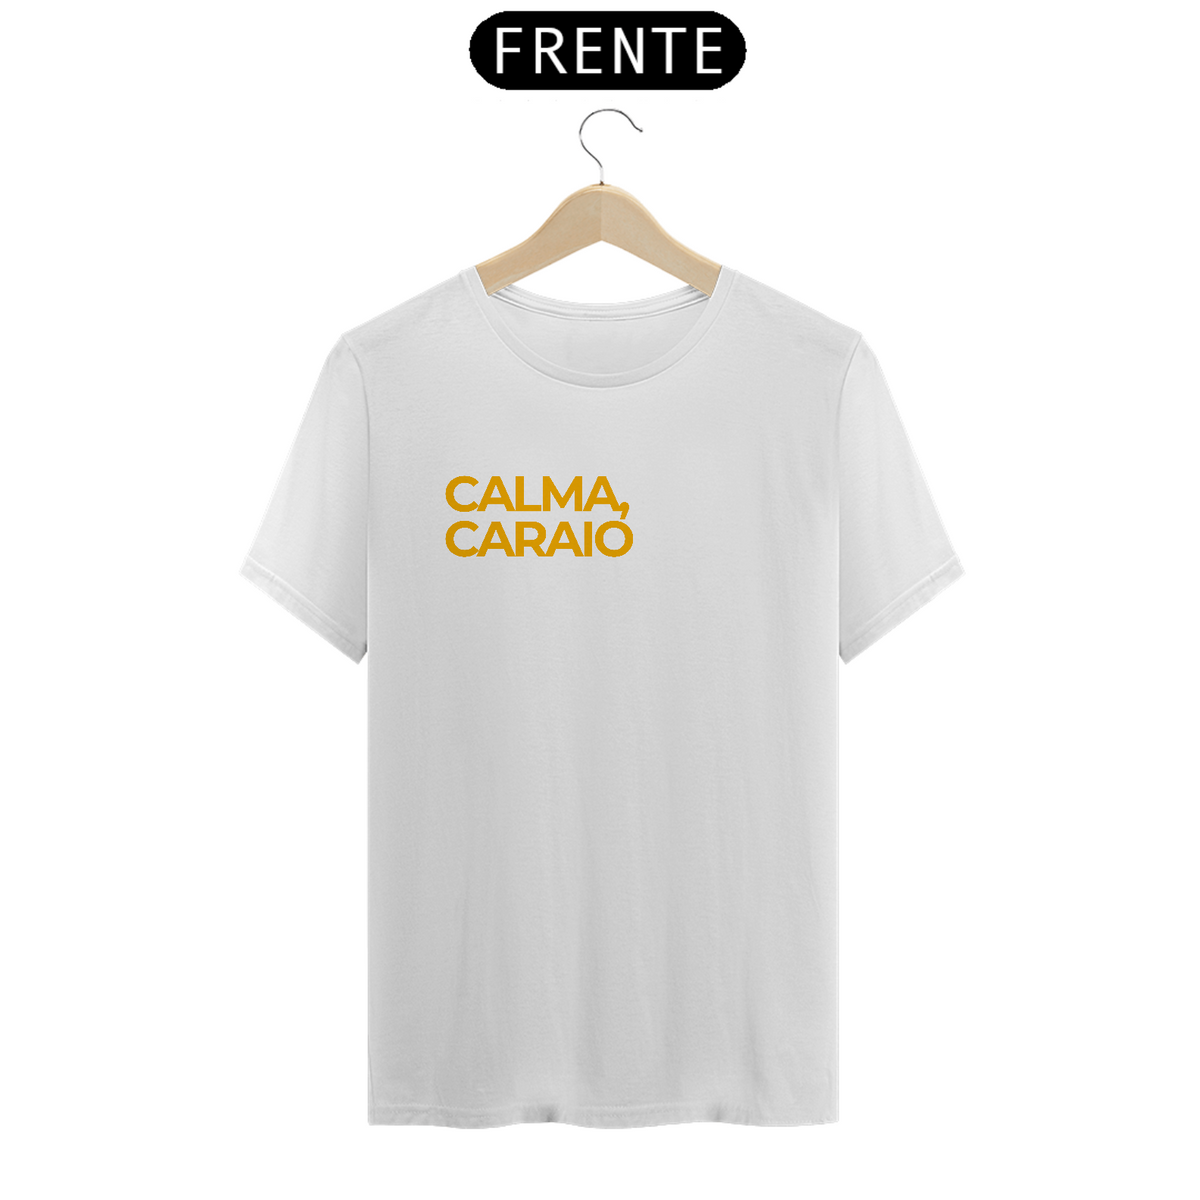 Nome do produto: Camiseta Calma, Caraio